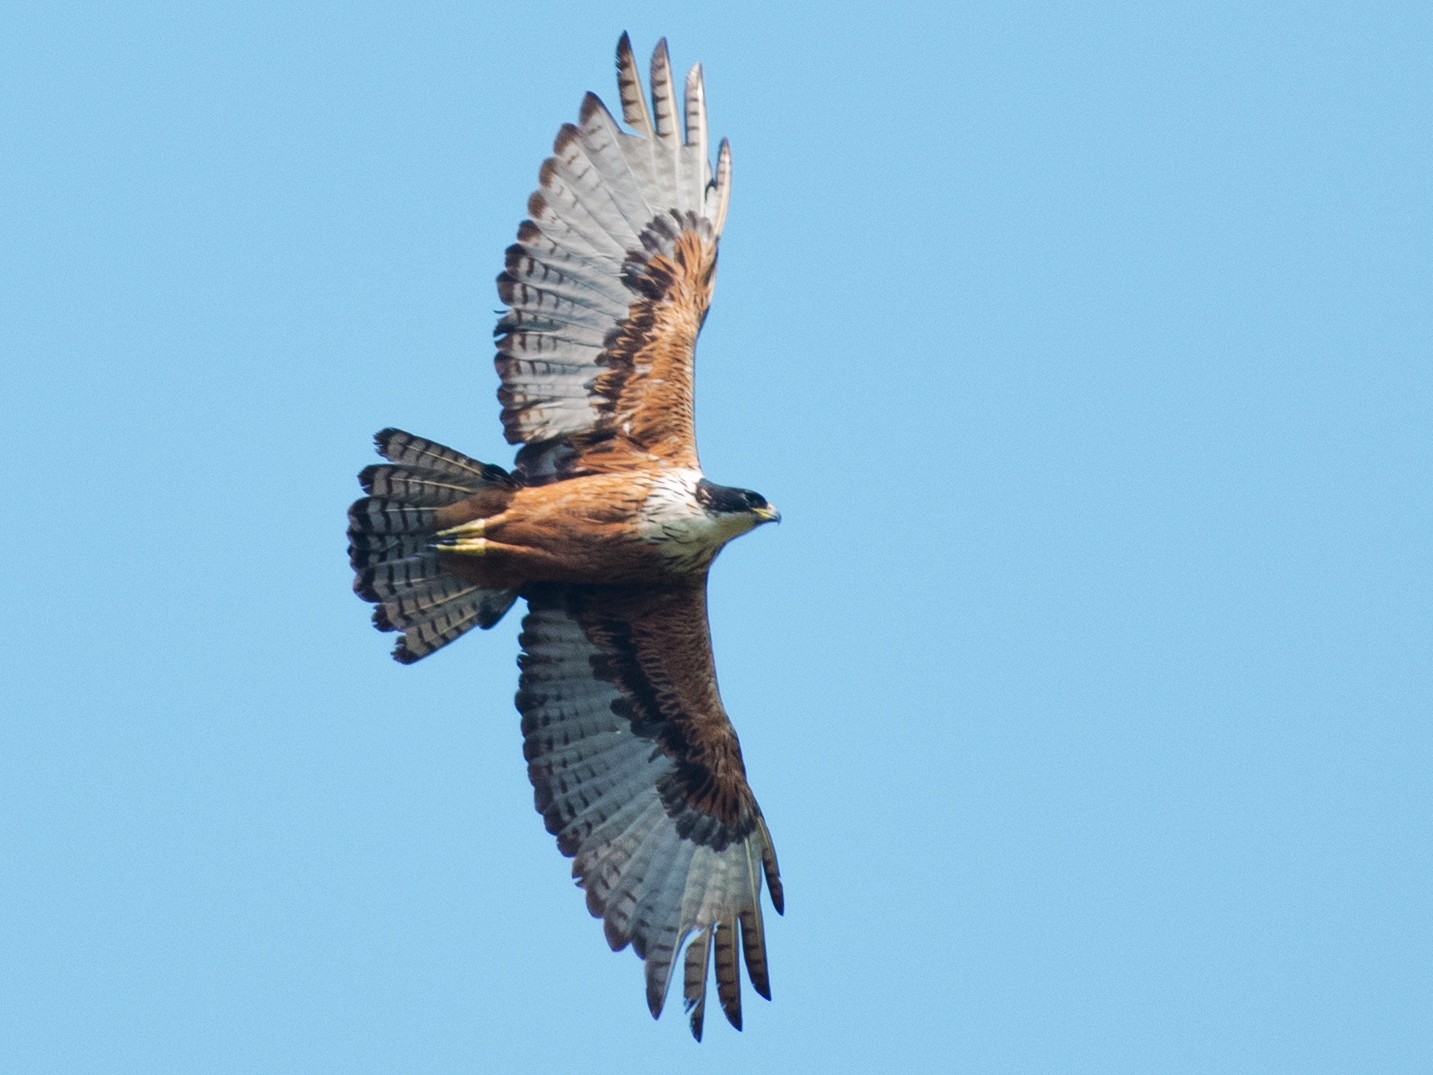 Rufous-bellied Eagle - Afthab Faisal k